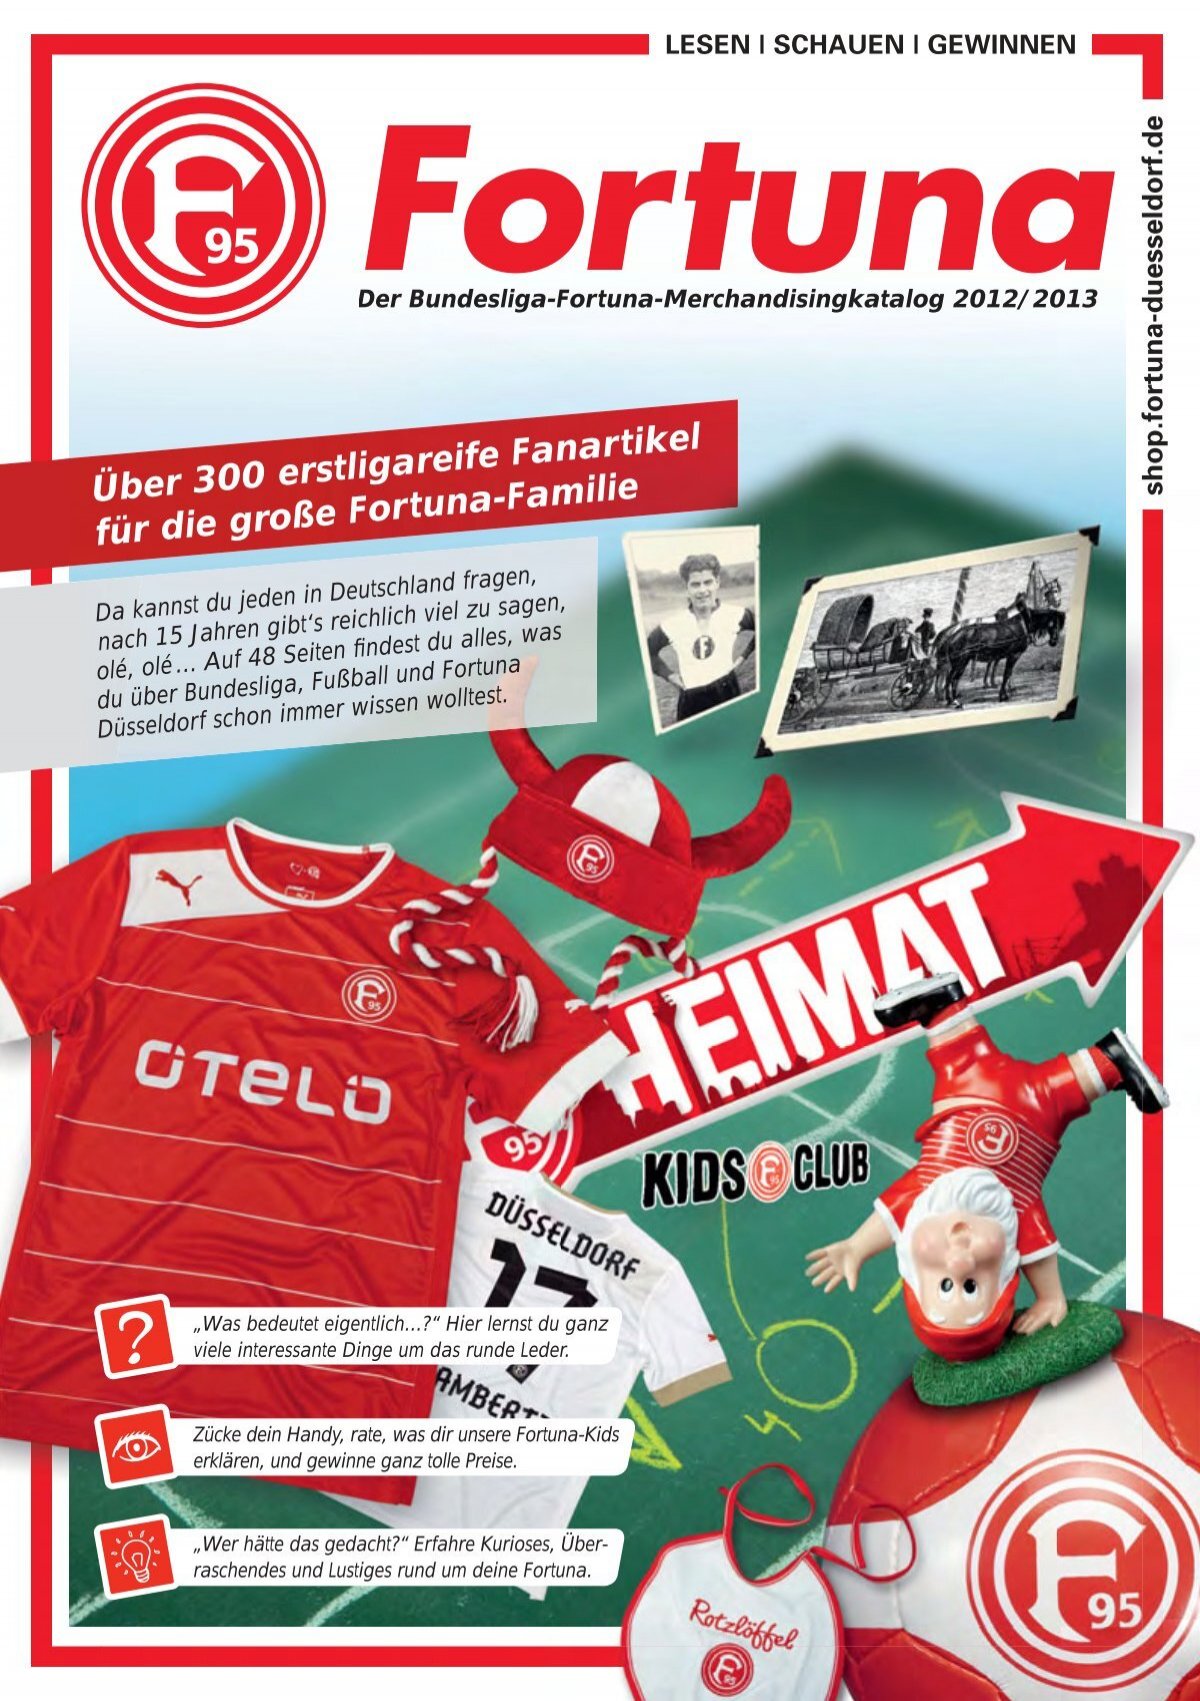 Online Katalog - Offizieller Düsseldorf von Fortuna Fanshop